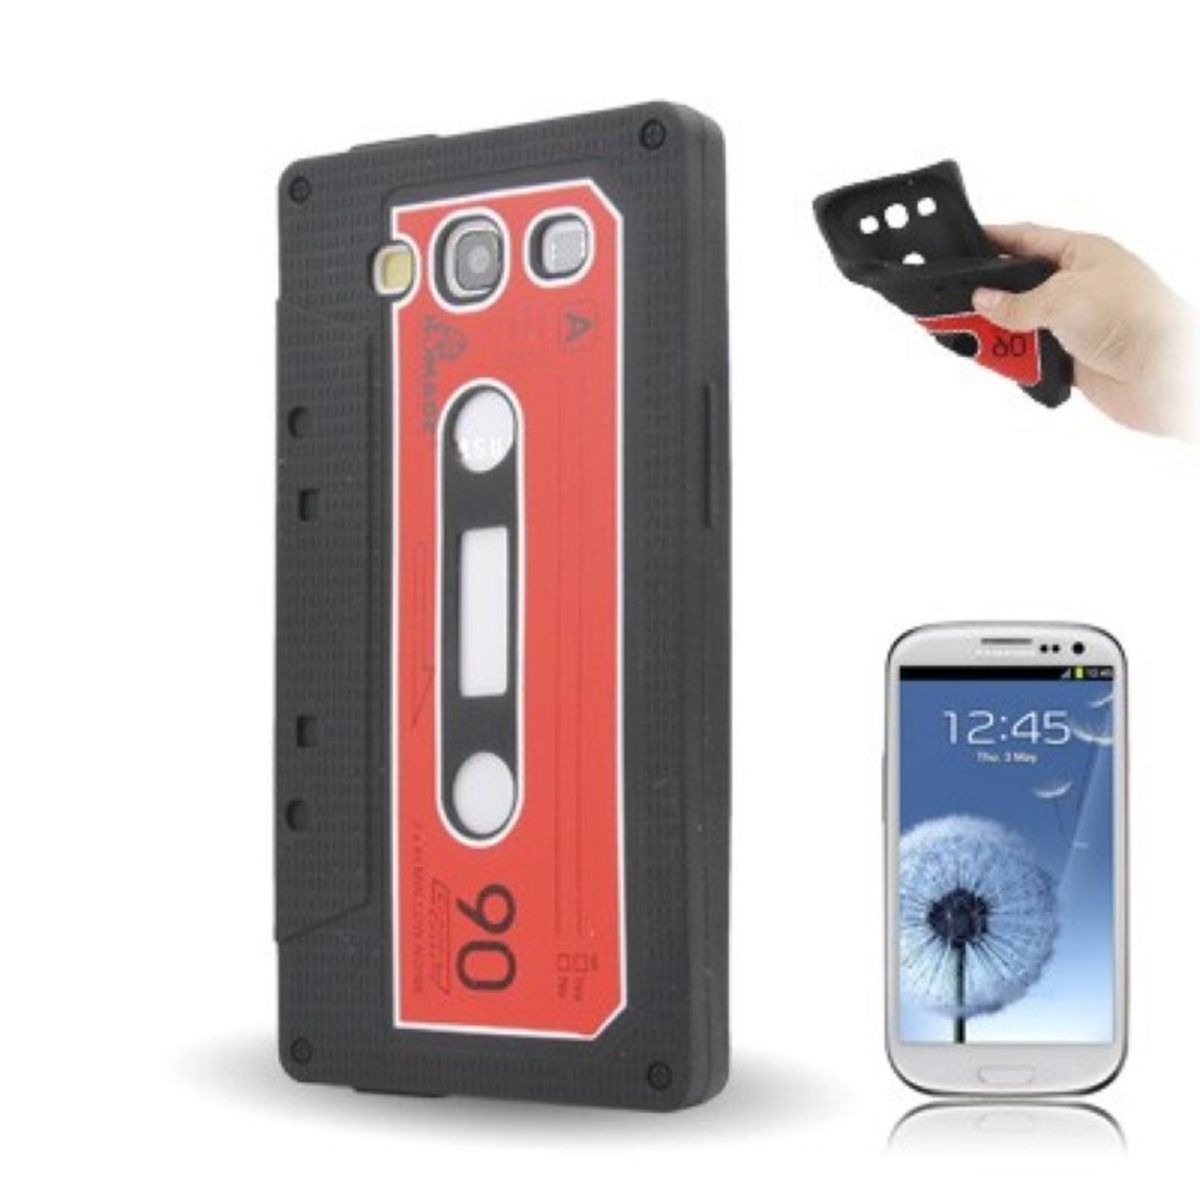 König Design silicone case cassette for mobile phone Samsung Galaxy S3 GT-I9300 / S3 LTE GT-I9305 / S3 NEO GT-I9301 / i9305 / S3 NEO i9301 / i9305 black